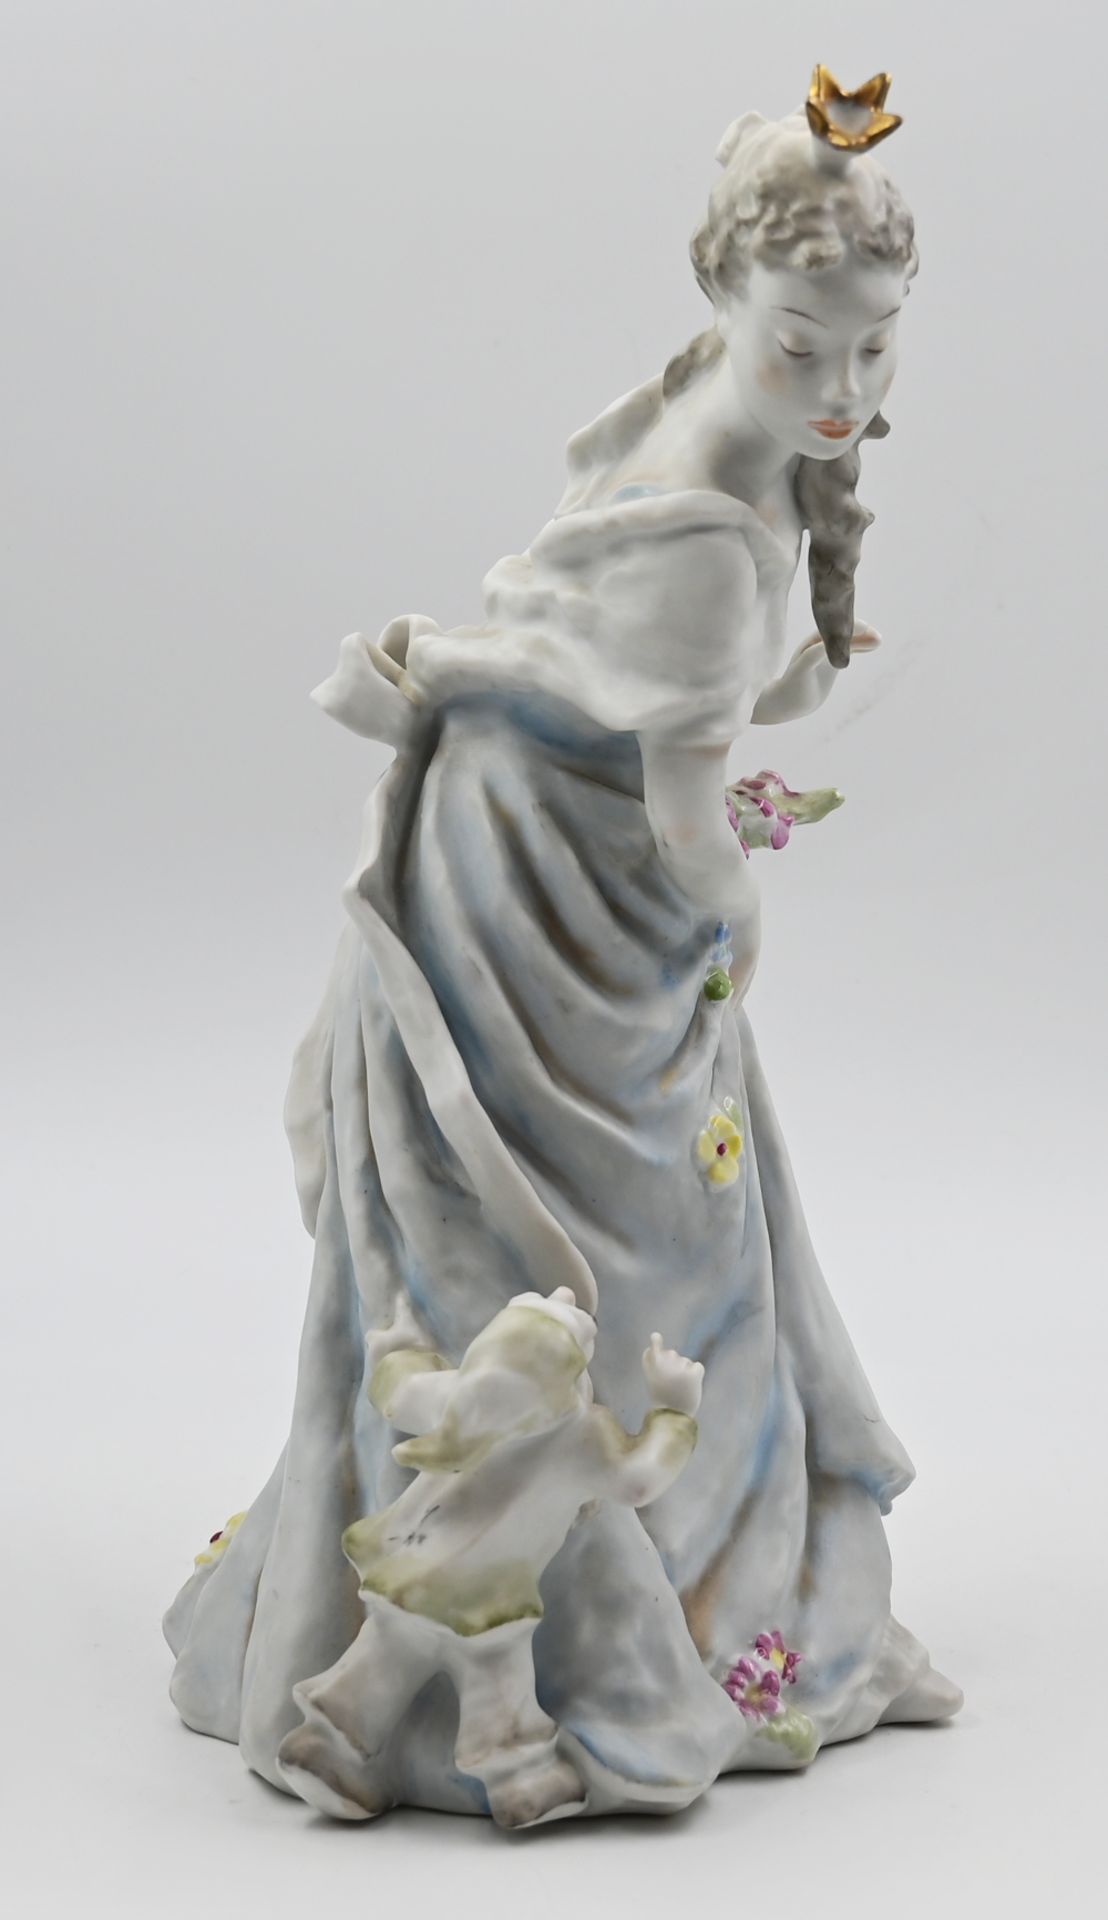 1 Figur Bisquitporzellan ROSENTHAL, "Schneewittchen", Entwurf Lore FRIEDRICH-GRONAU (1908-2002), - Image 2 of 4